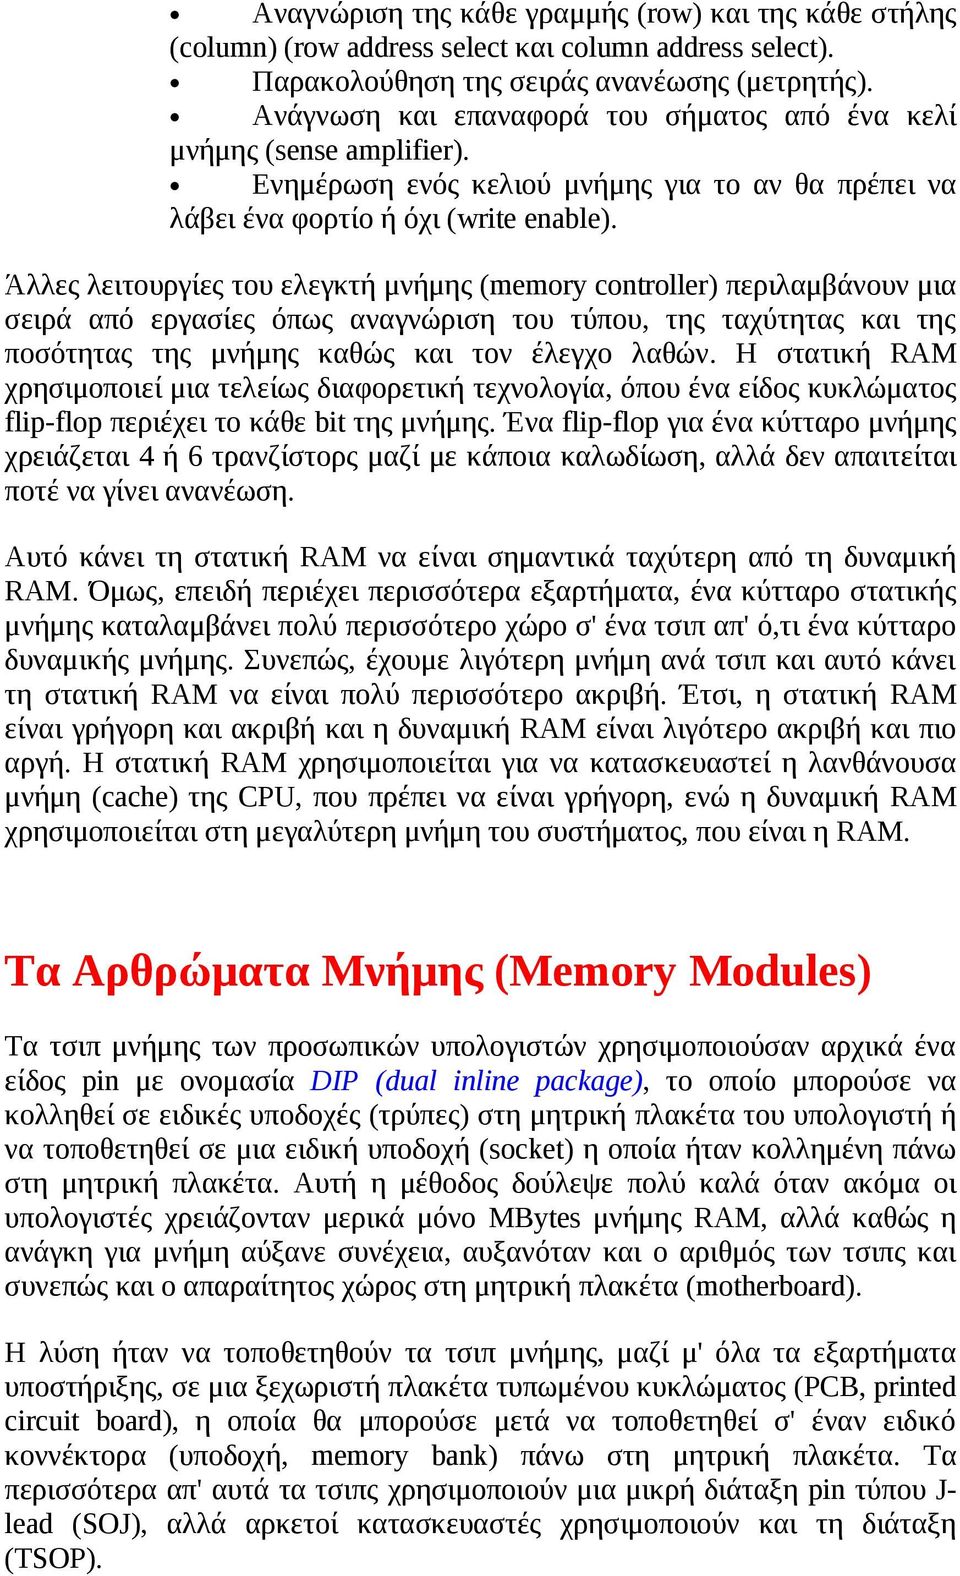 Άλλες λειτουργίες του ελεγκτή μνήμης (memory controller) περιλαμβάνουν μια σειρά από εργασίες όπως αναγνώριση του τύπου, της ταχύτητας και της ποσότητας της μνήμης καθώς και τον έλεγχο λαθών.